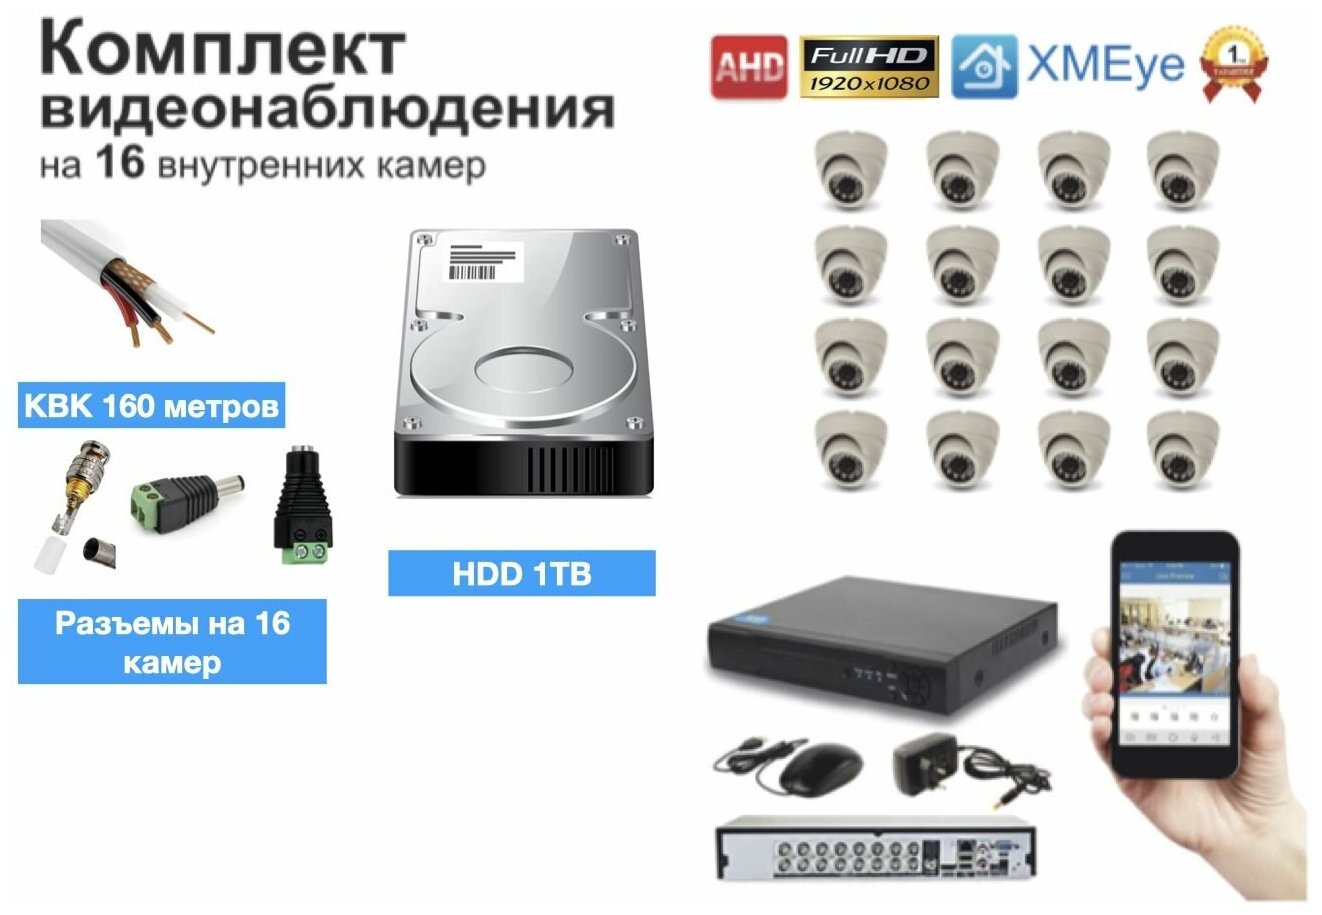 Полный готовый комплект видеонаблюдения на 16 камер (KIT16AHD300W1080P_HDD1TB_KVK)